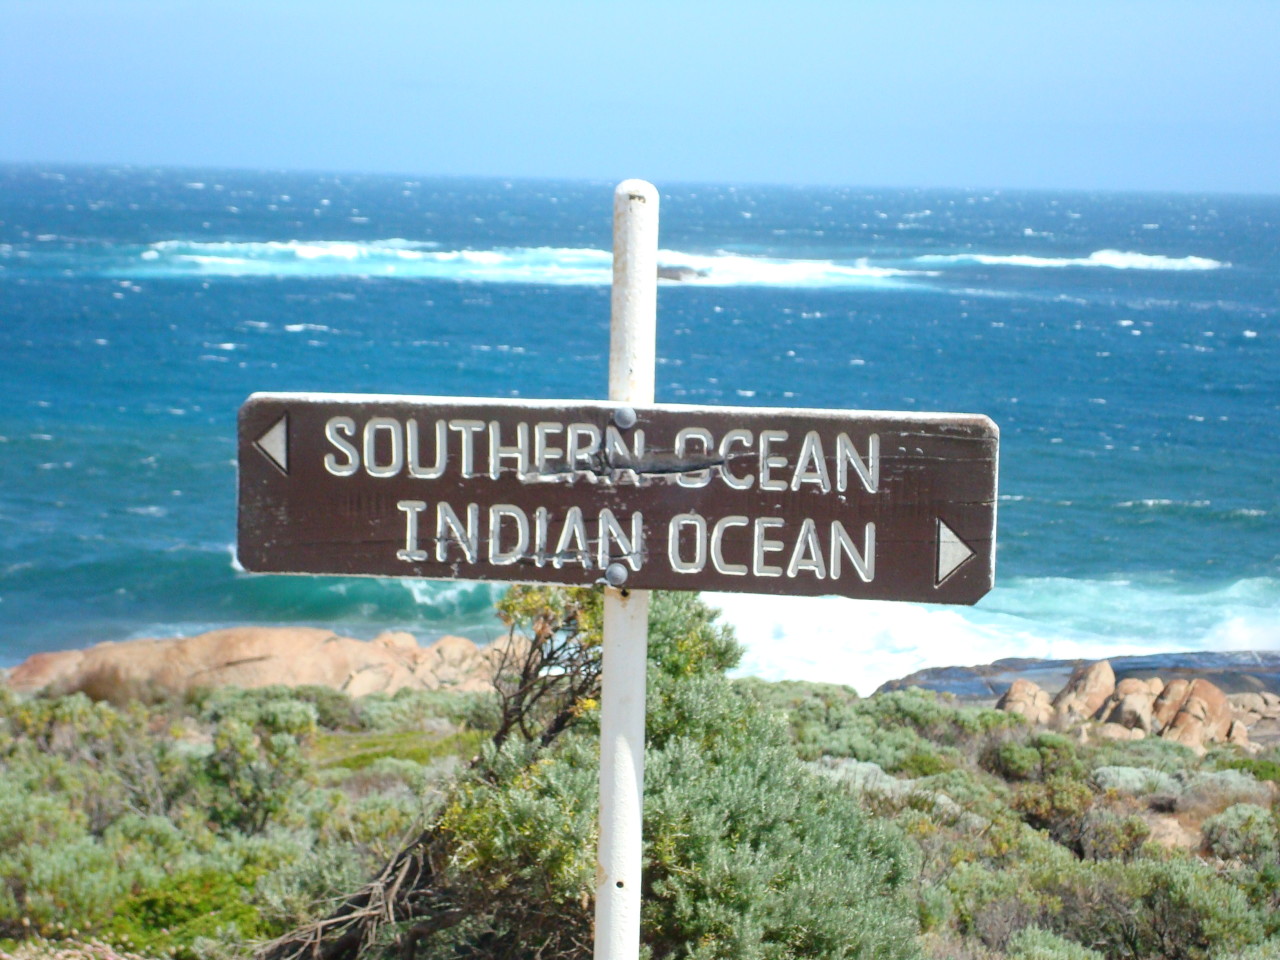 Southern Ocean meets Indian Ocean